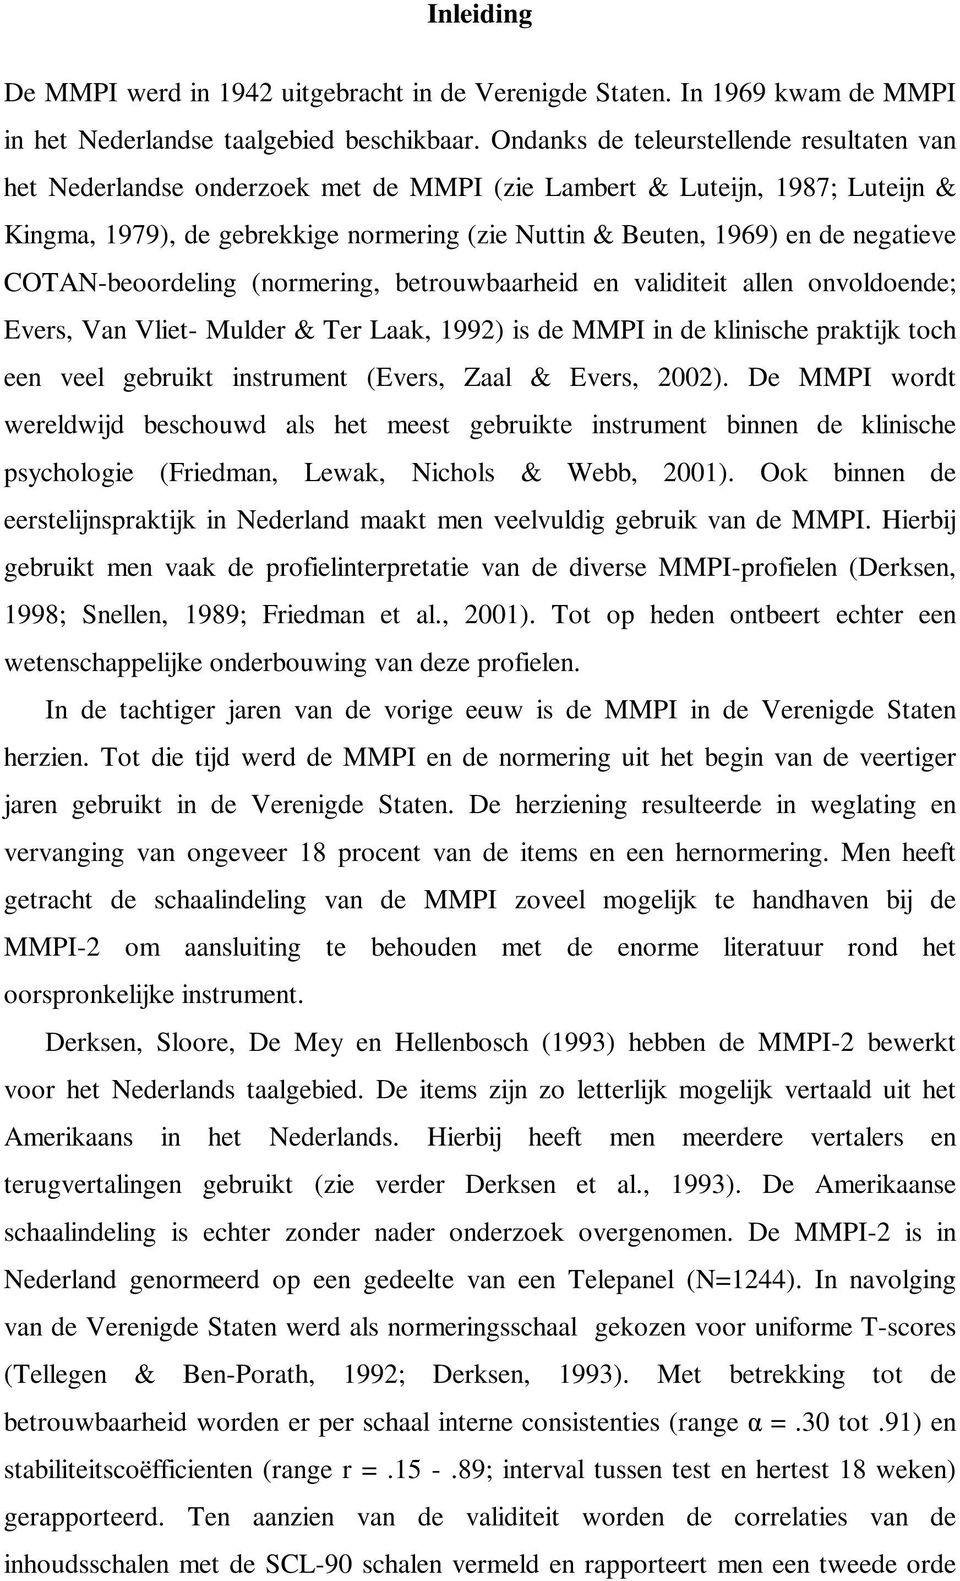 negatieve COTAN-beoordeling (normering, betrouwbaarheid en validiteit allen onvoldoende; Evers, Van Vliet- Mulder & Ter Laak, 1992) is de MMPI in de klinische praktijk toch een veel gebruikt